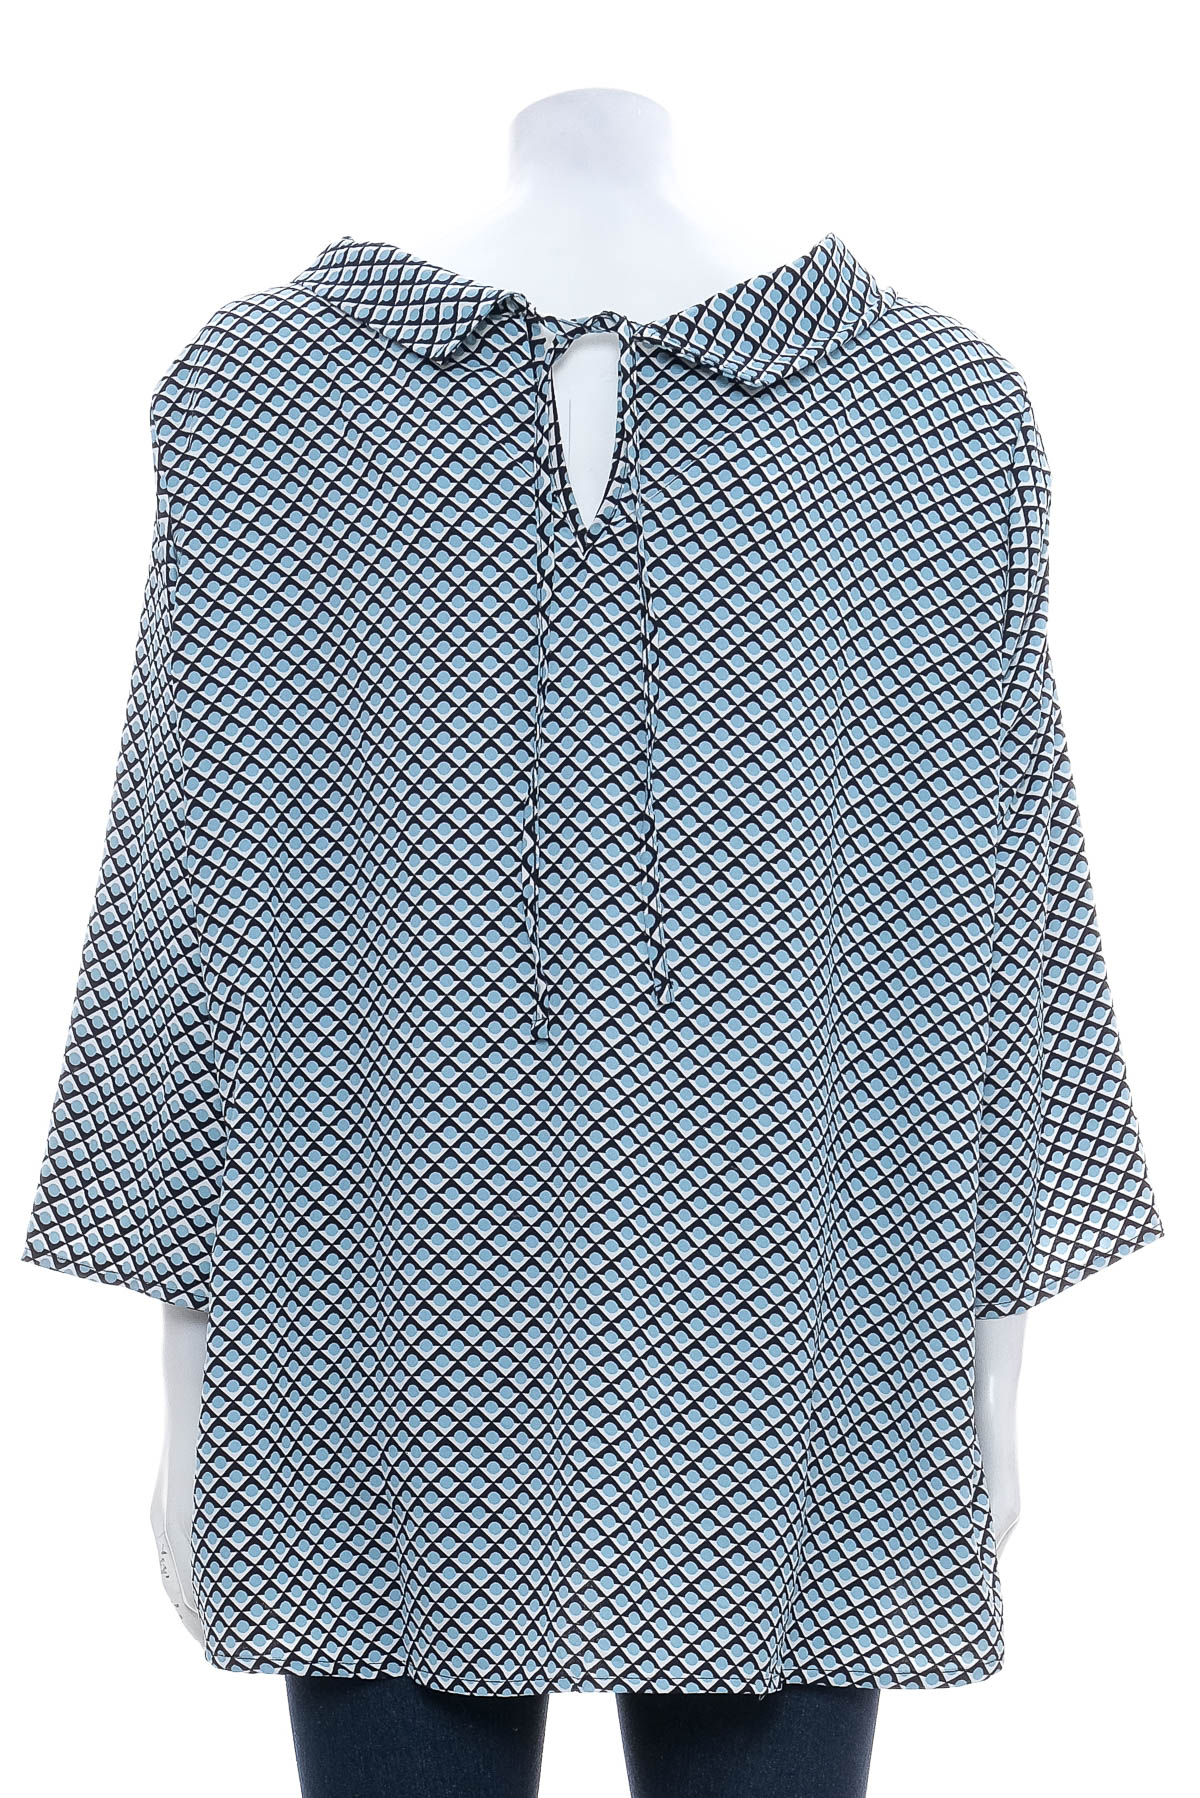 Γυναικείο πουκάμισο - AproductZ - 1